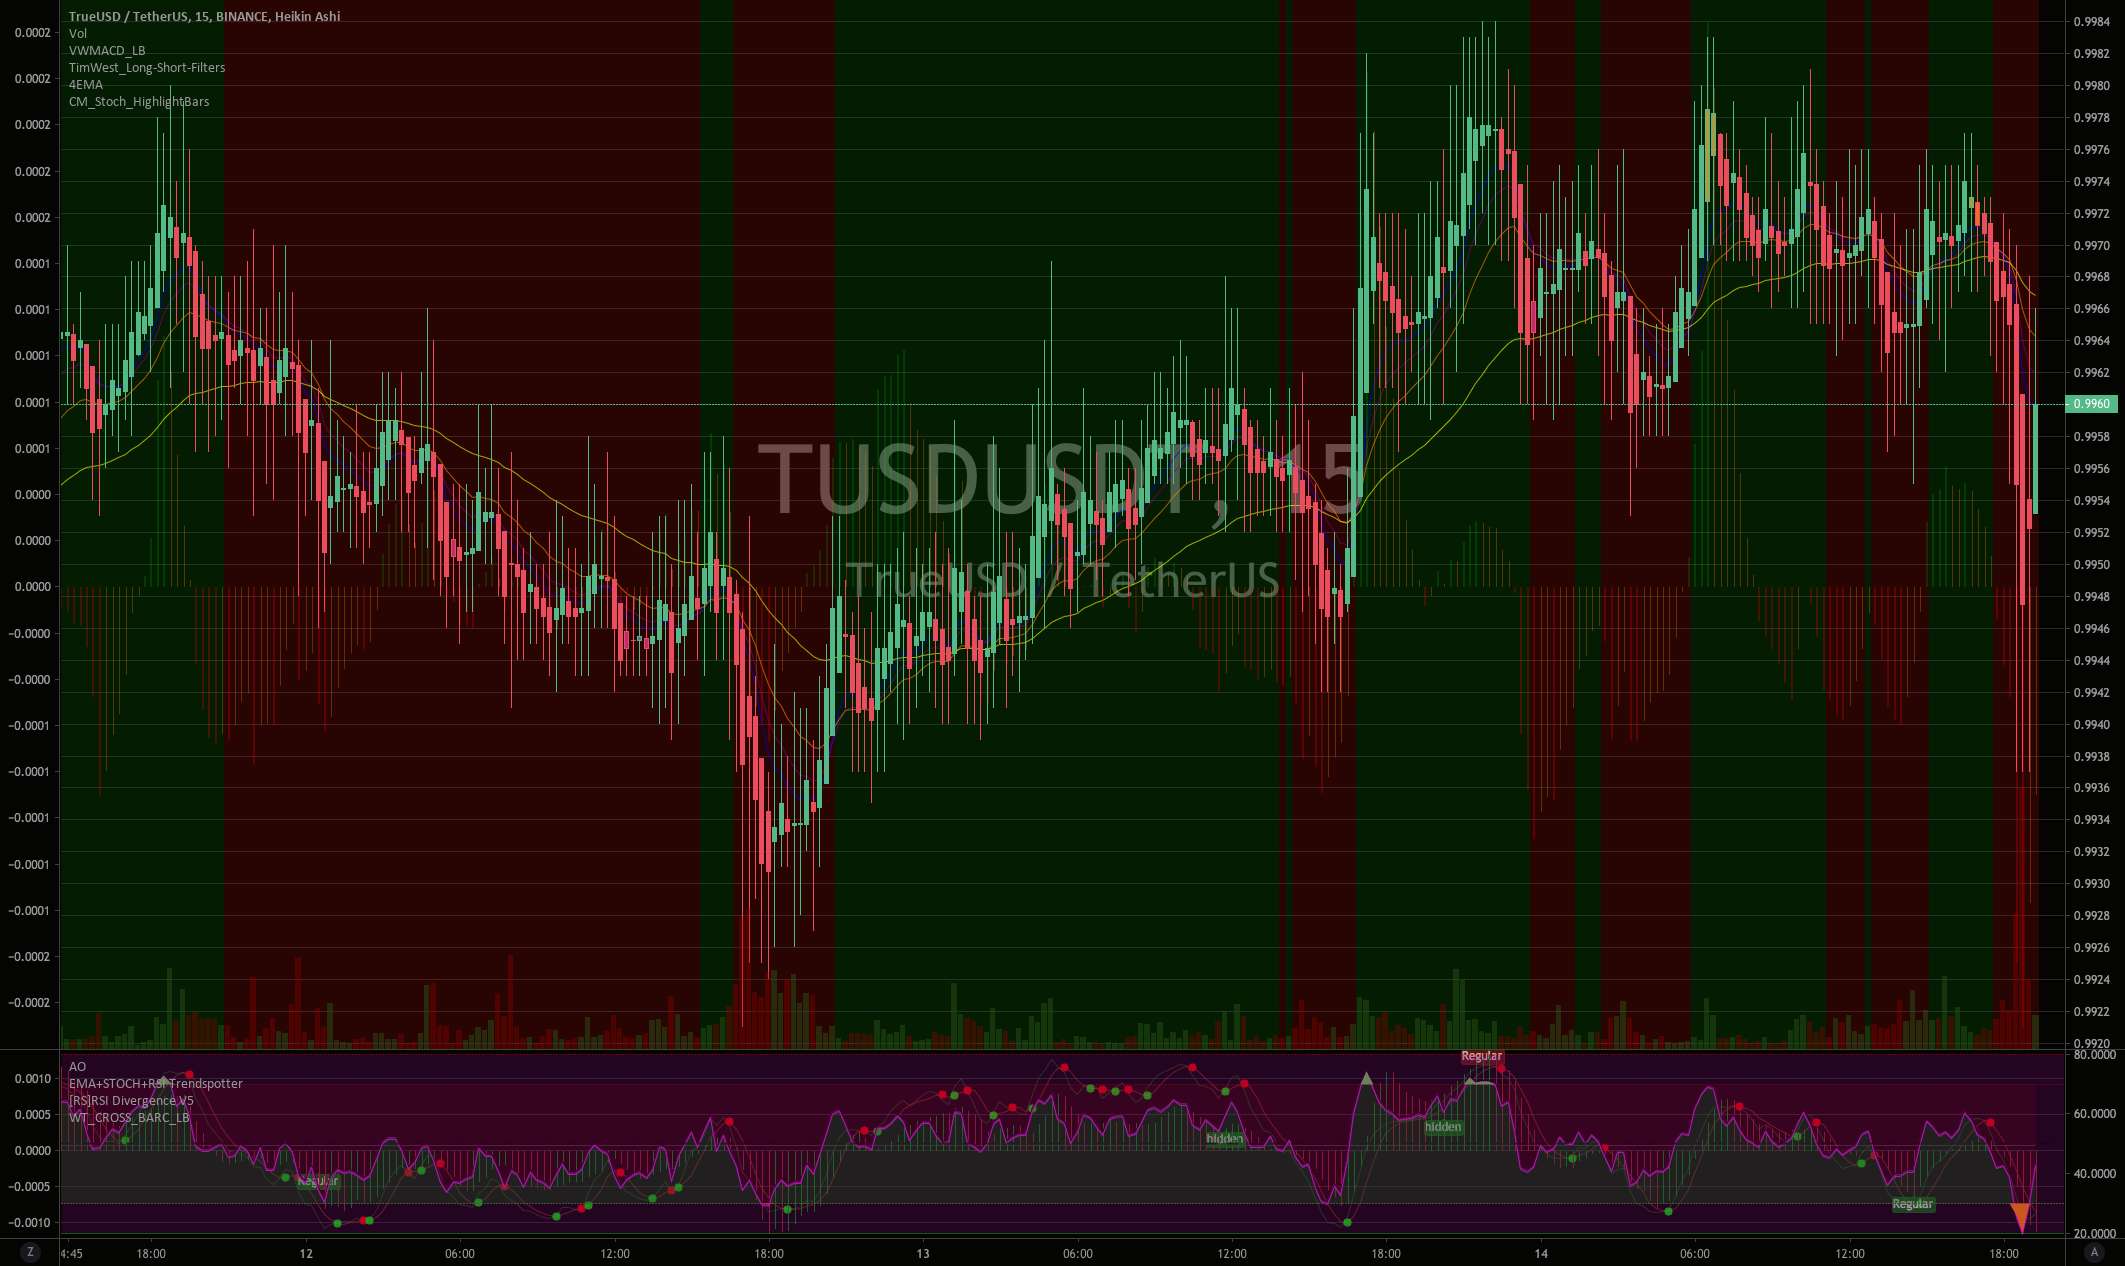 TUSD-USDT یک شاخص روند خوب BTC است + تحلیل قیمت 